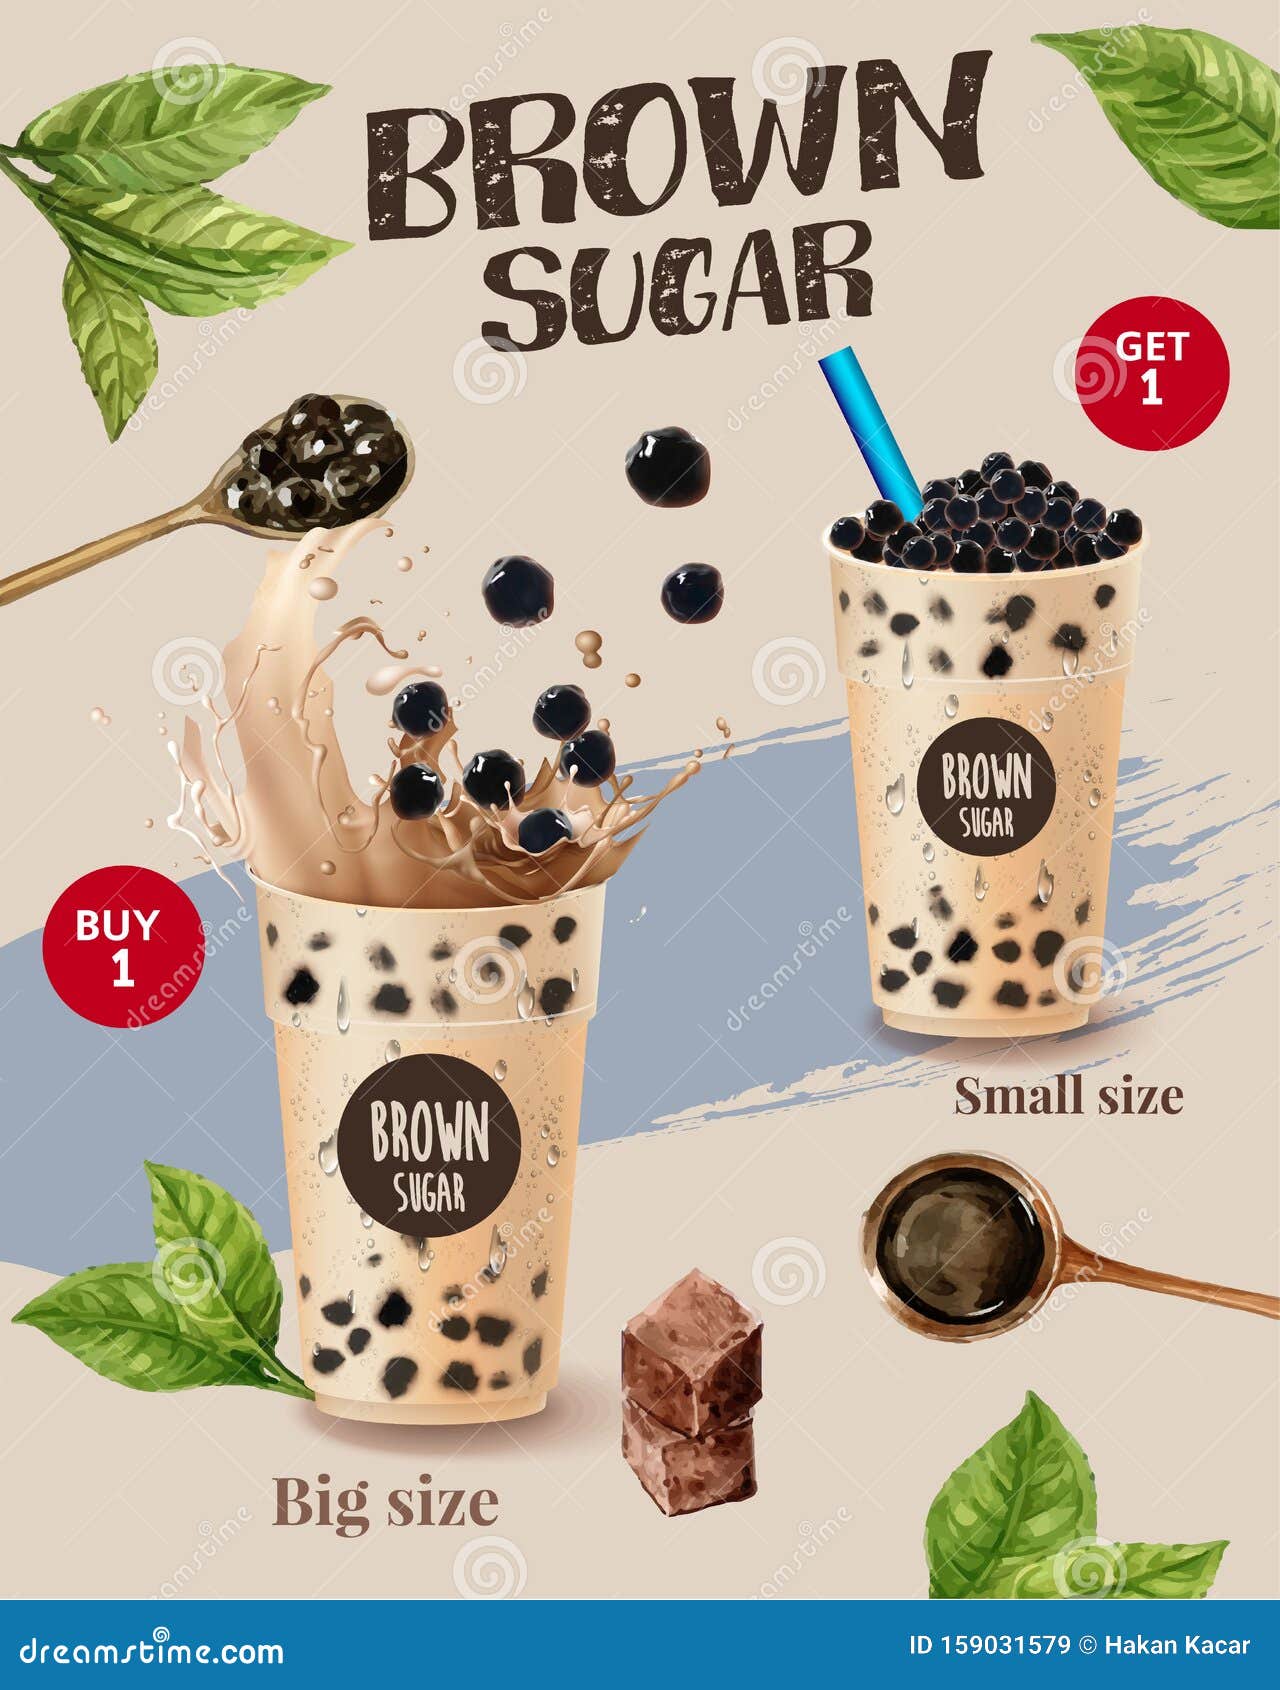 Quảng cáo thực đơn trà sữa (bubble milk tea menu ads): Tìm hiểu về tất cả các lựa chọn trà sữa mới với quảng cáo thực đơn trà sữa hấp dẫn. Hãy khám phá và trải nghiệm những hương vị độc đáo và thơm ngon, cùng với đầy đủ các loại trái cây quý giá. 